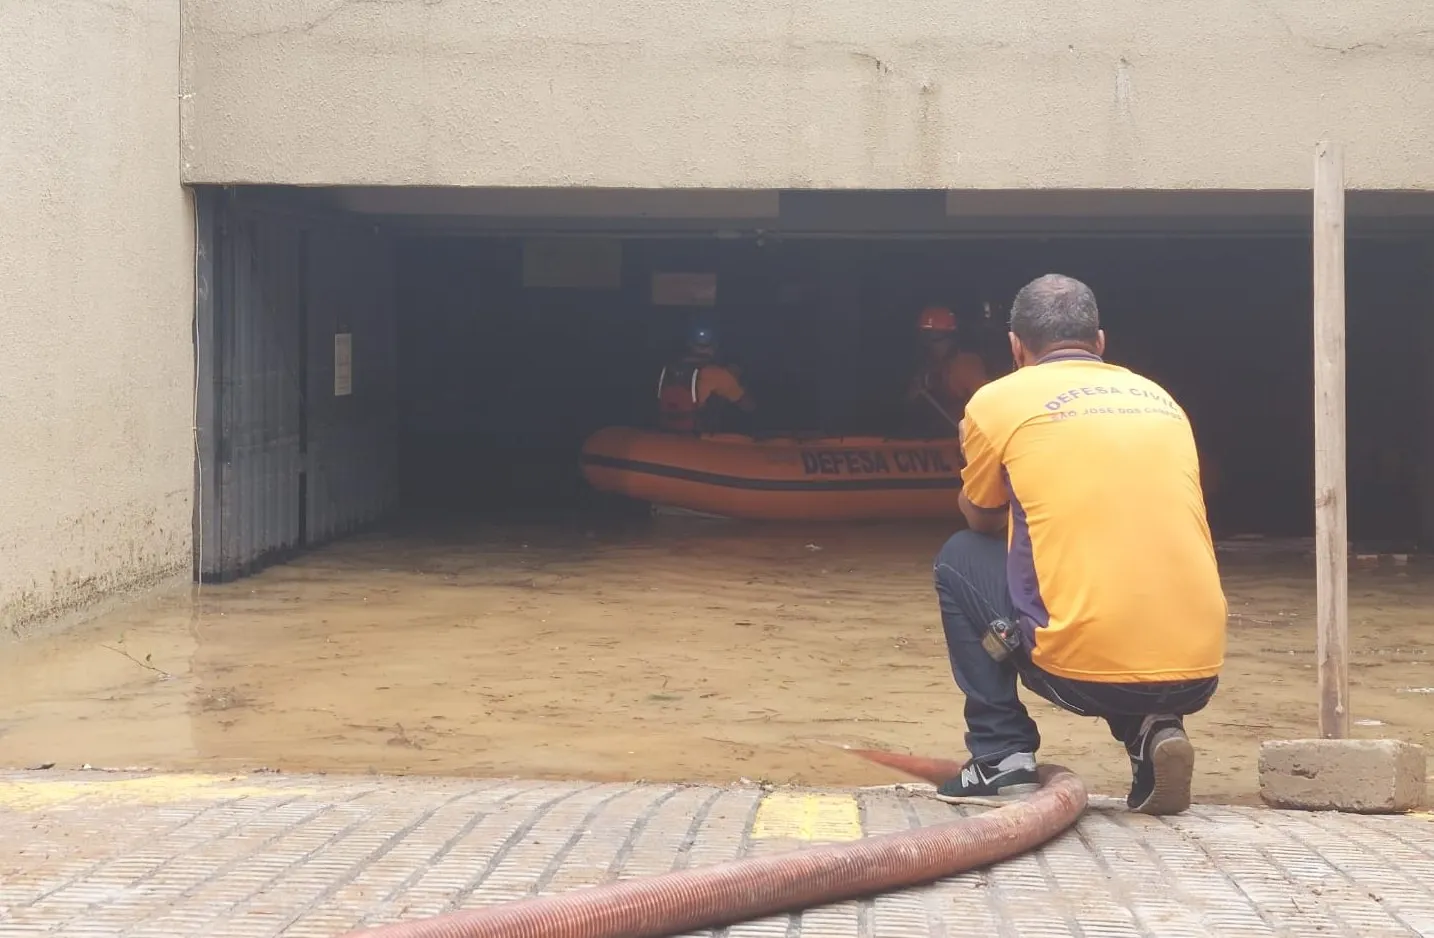 Água invade estacionamento e deixa carros submersos em São José dos Campos